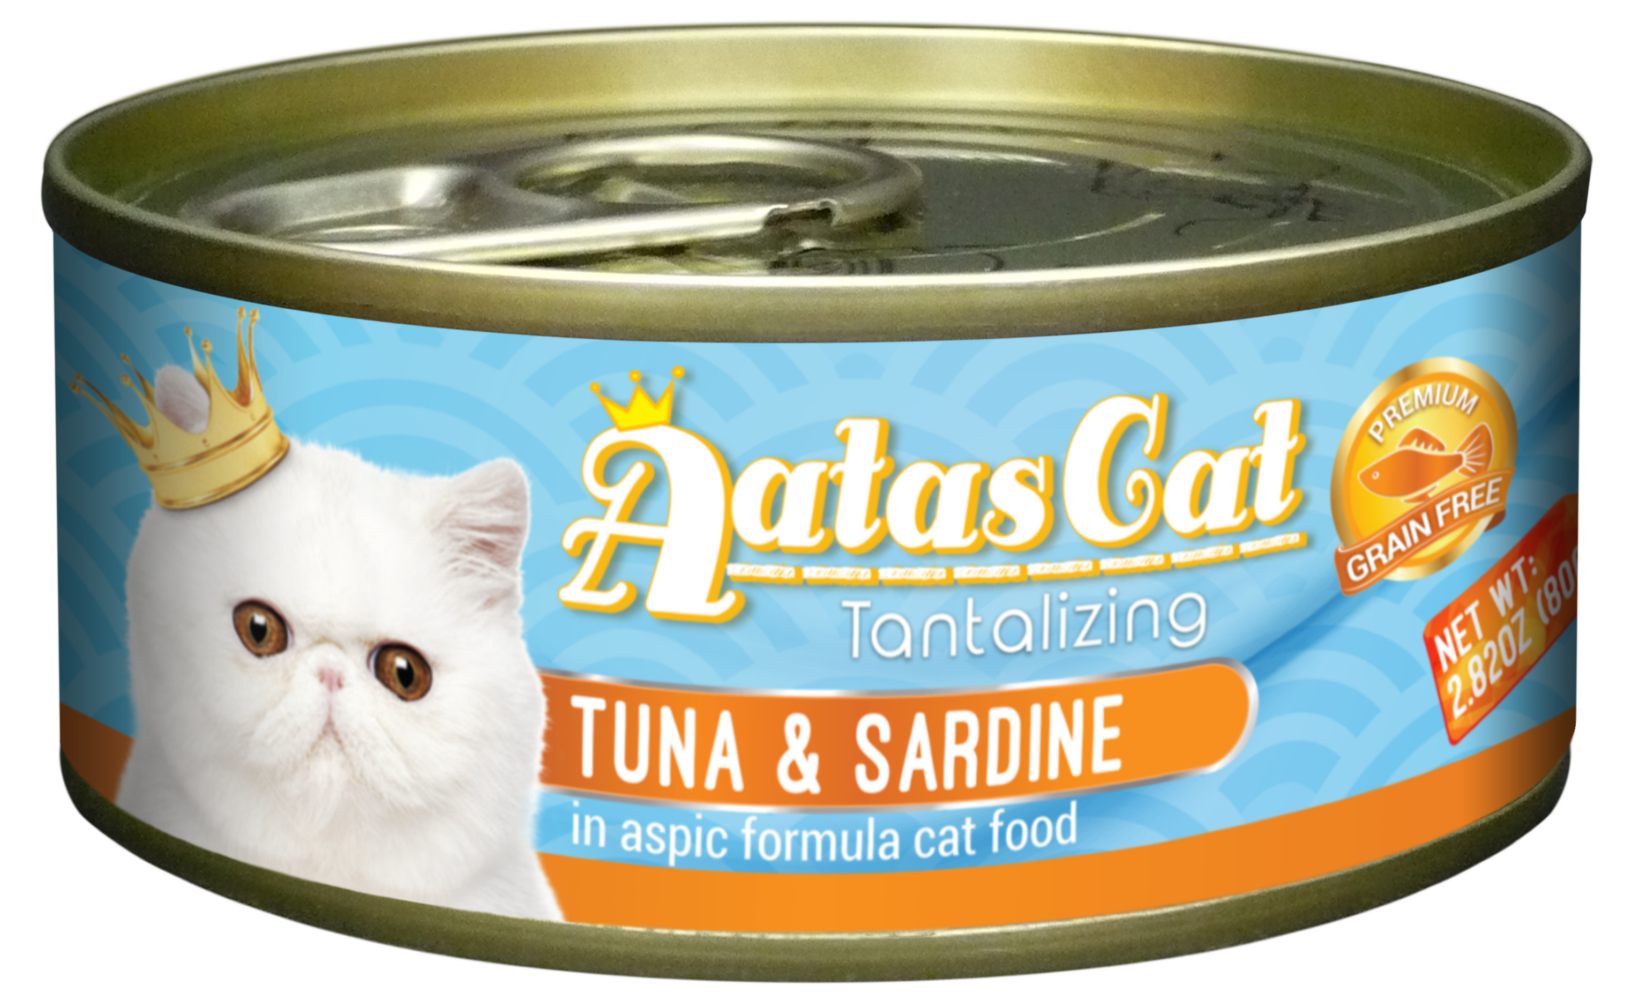 Aatas Cat Tantalizing Tuna & Sardine in Aspic 80g